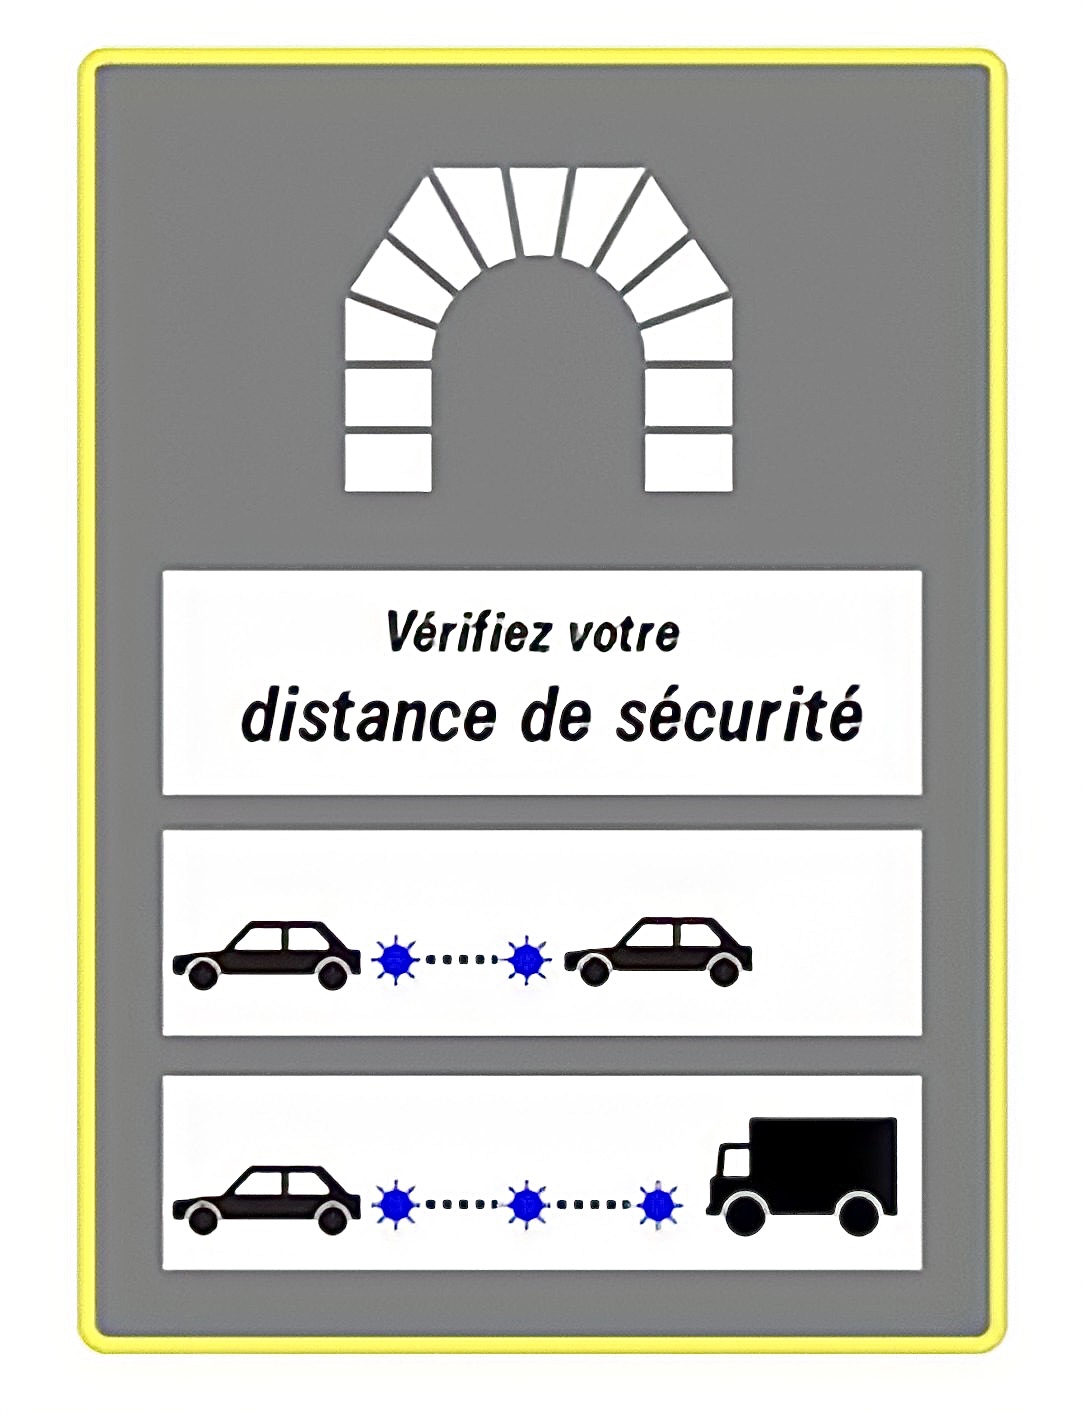 De nouveaux panneaux pour inciter les automobilistes à respecter les distances de sécurité dans les tunnels routiers.